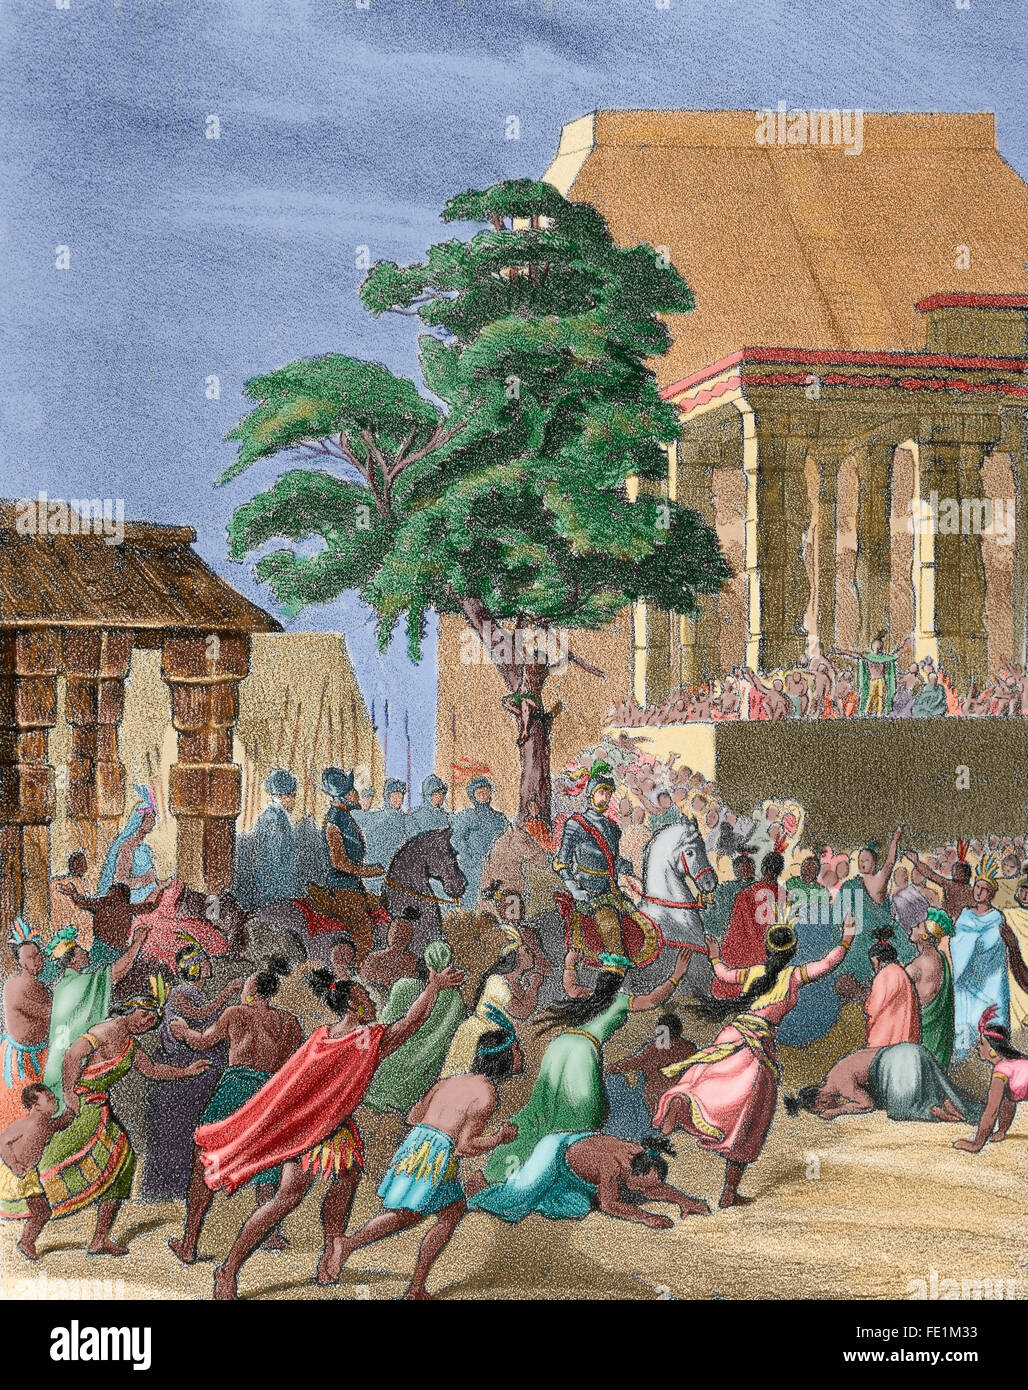 Spanische Eroberung des Aztekenreiches (1519-1521). Spanier finden Regufe in Tlaxcala, nachdem ein Großteil der Opfer kämpfen gegen die Azteken in der Schlacht von Otumba im Jahre 1520 erlitt. Gravur auf "Historia de España", 19. Jahrhundert. Farbige. Stockfoto